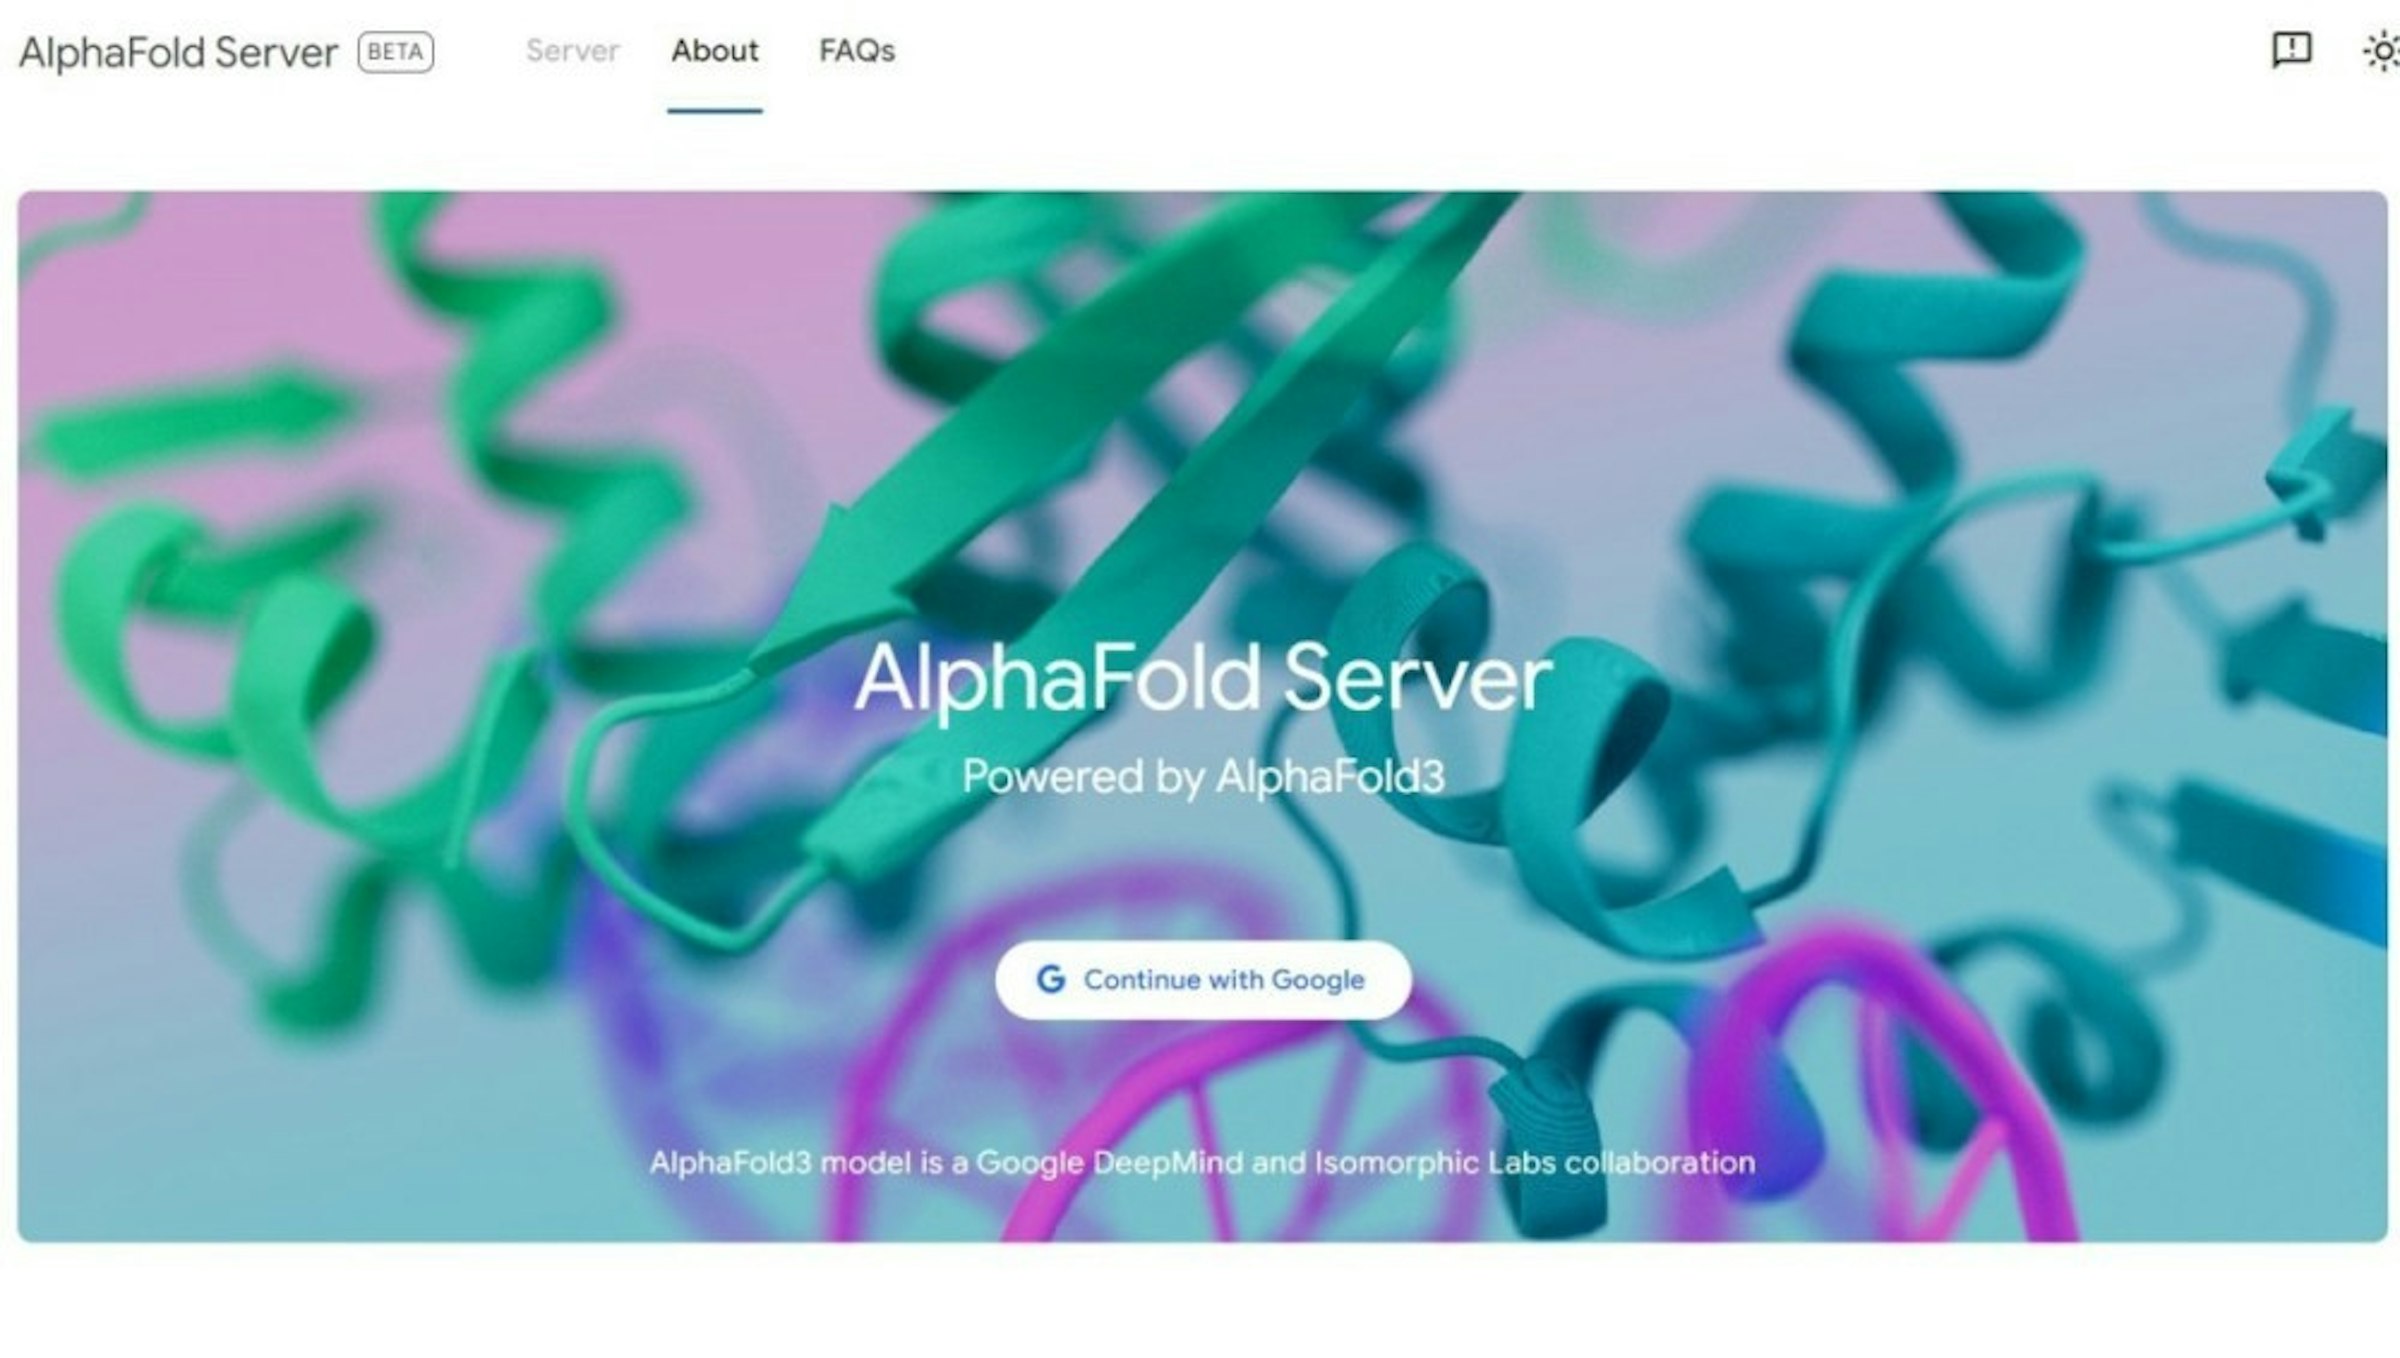 照片中提到了AlphaFold Server BETA、Server About、FAQs，包含了折疊、折疊、深心、蛋白、深度學習